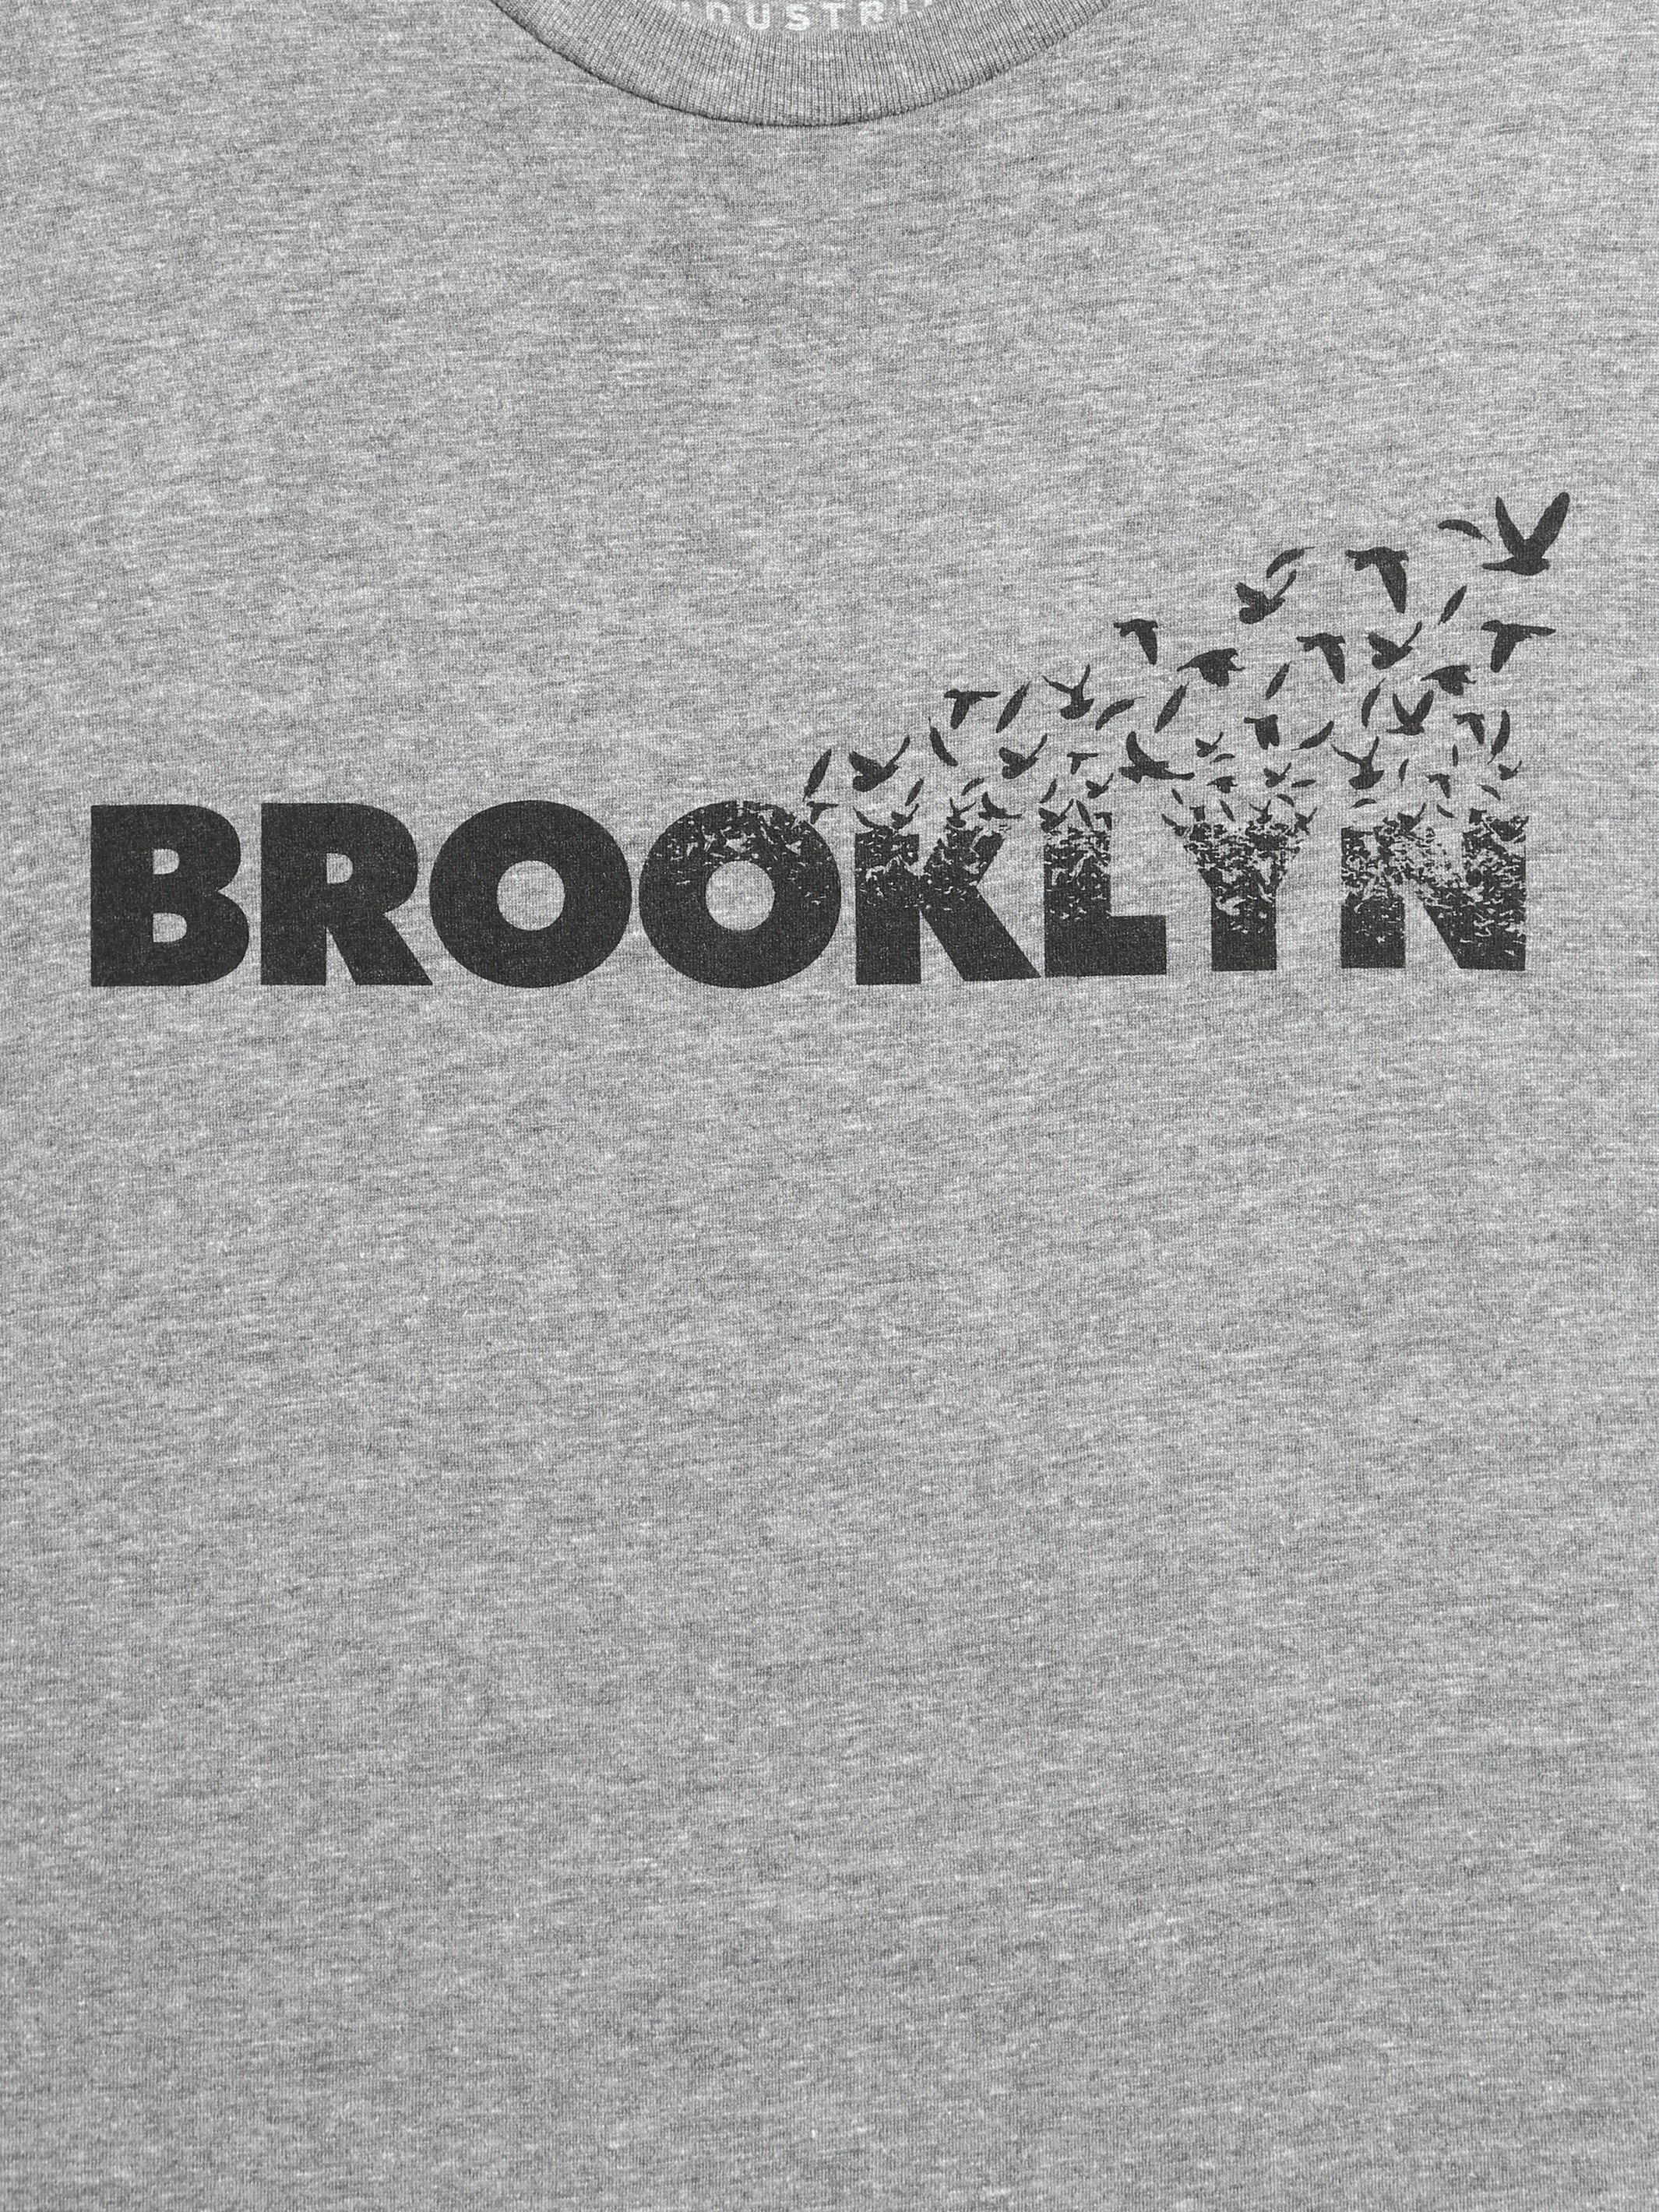 Men's Flight Brooklyn T-Shirt - BROOKLYN INDUSTRIES